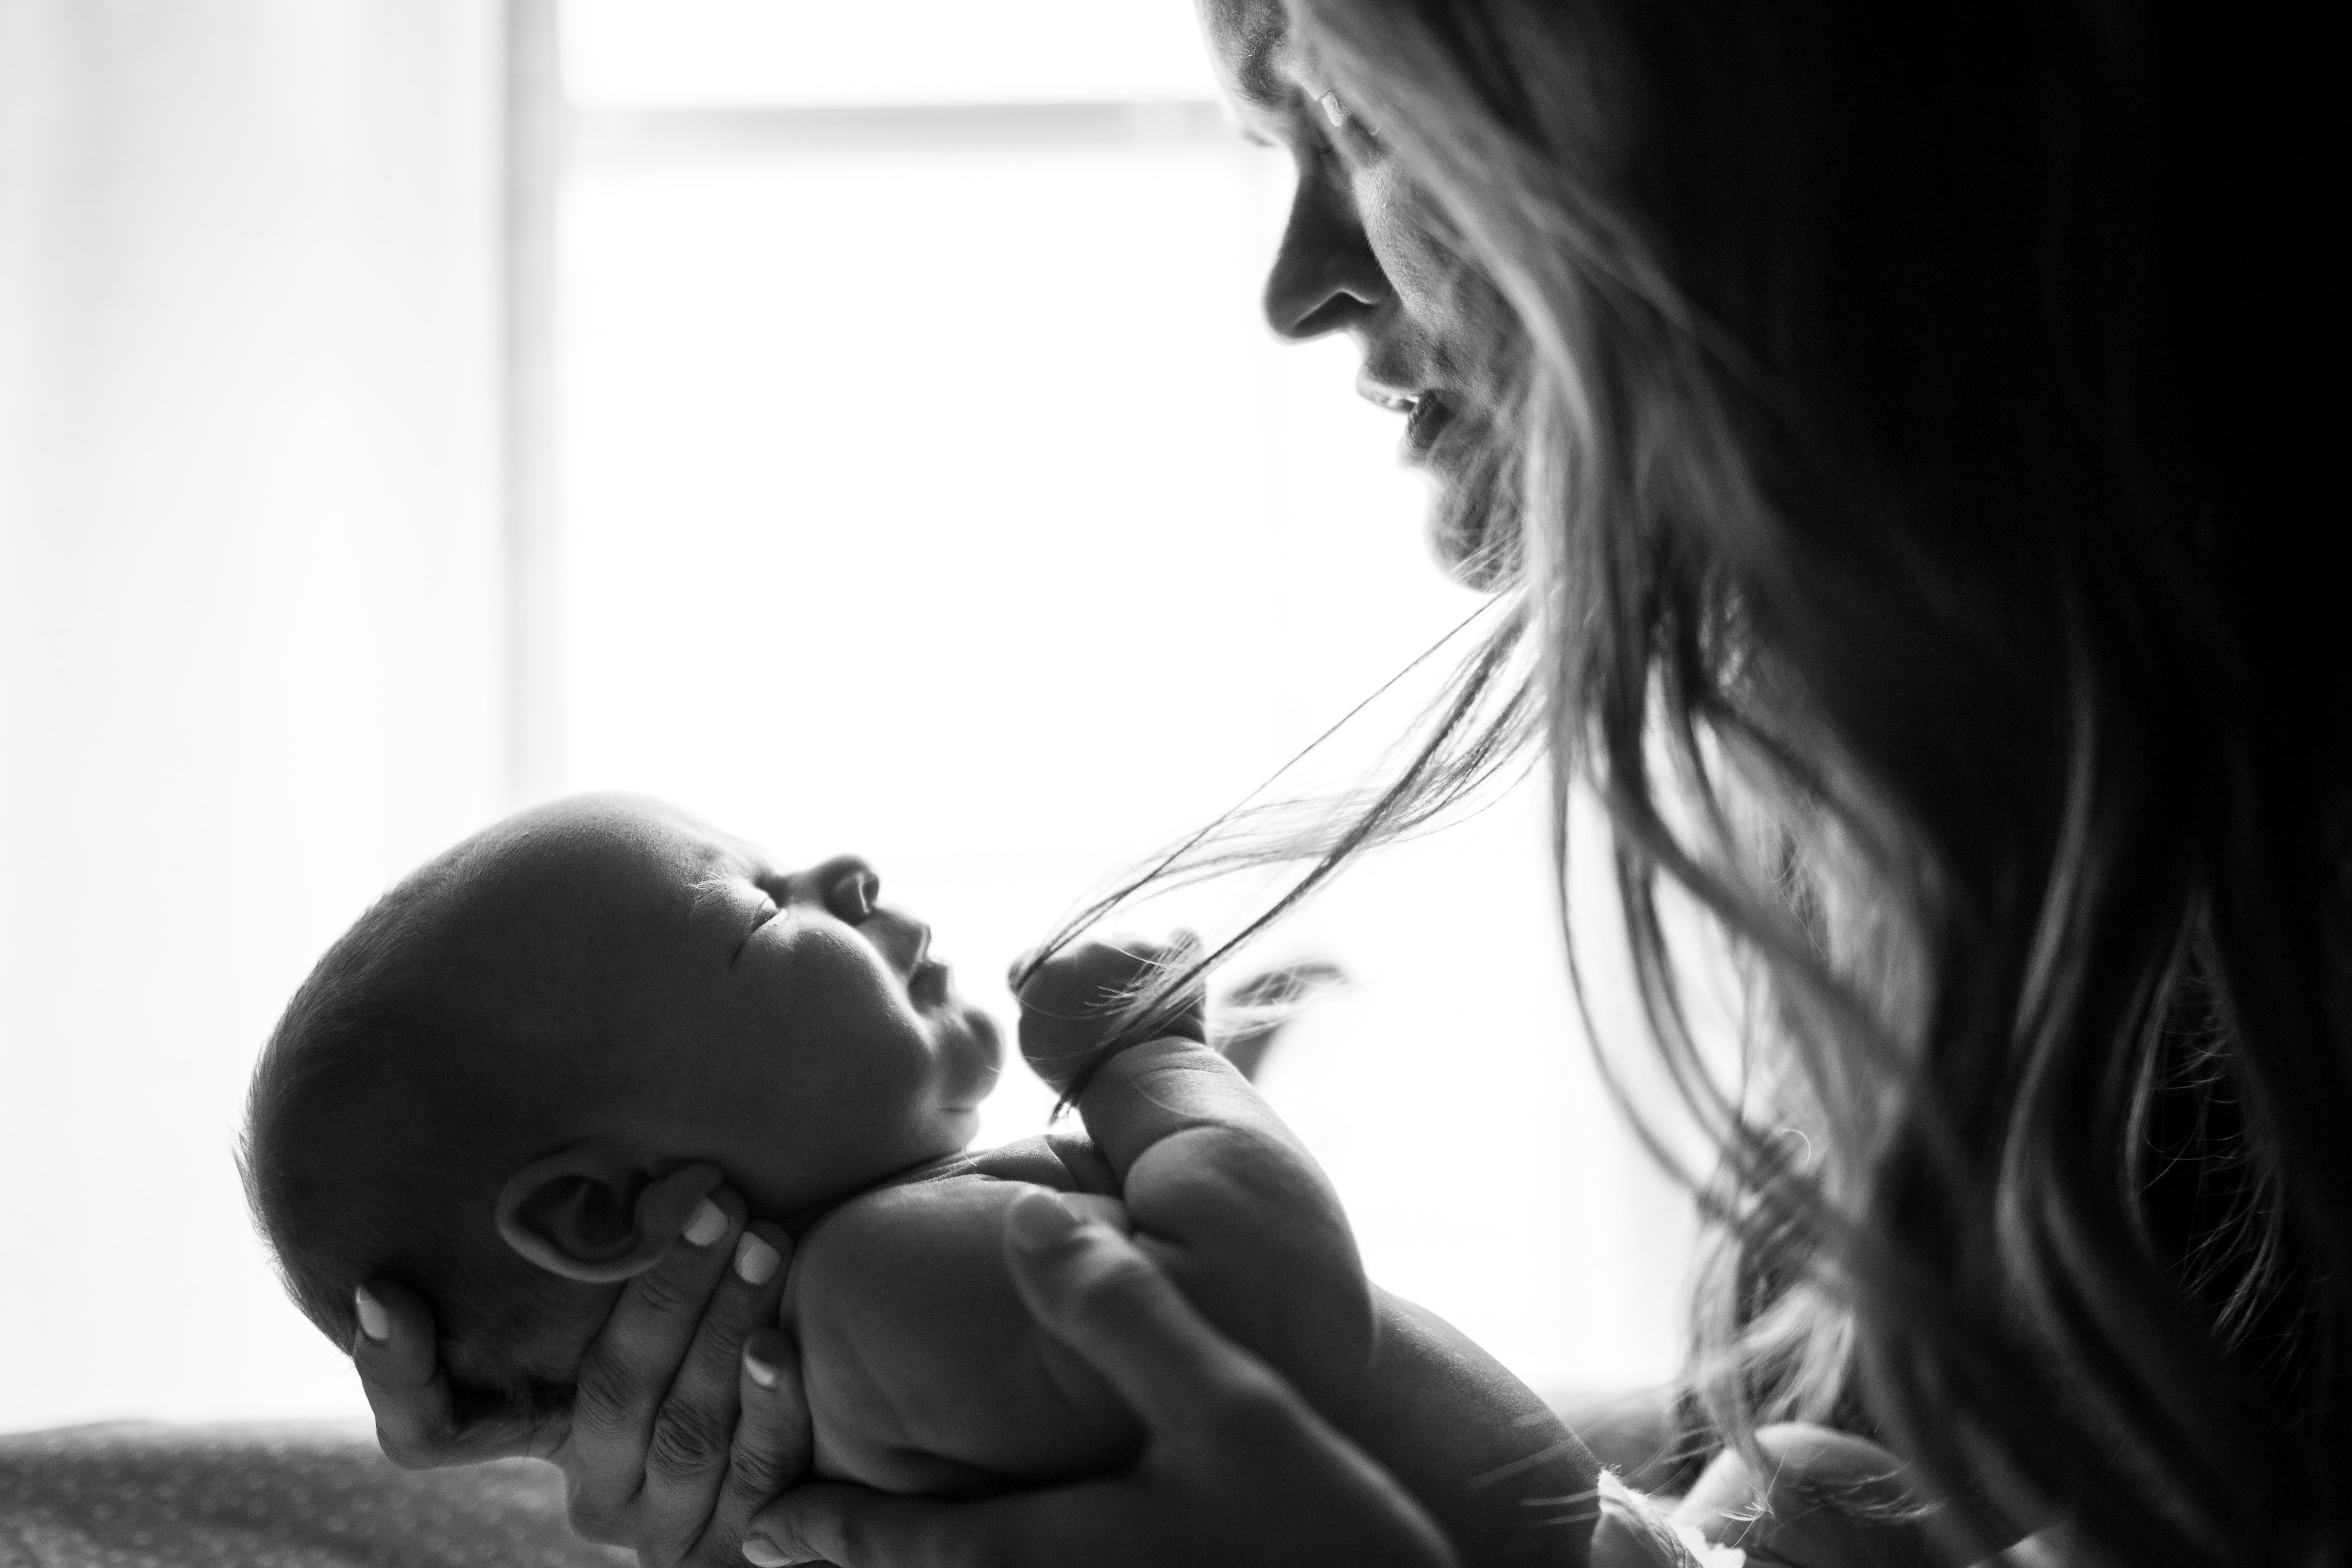 Karen war fassungslos, als sie ein verlassenes Baby außerhalb der Entbindungsstation fand, in der sie arbeitete. | Quelle: Unsplash